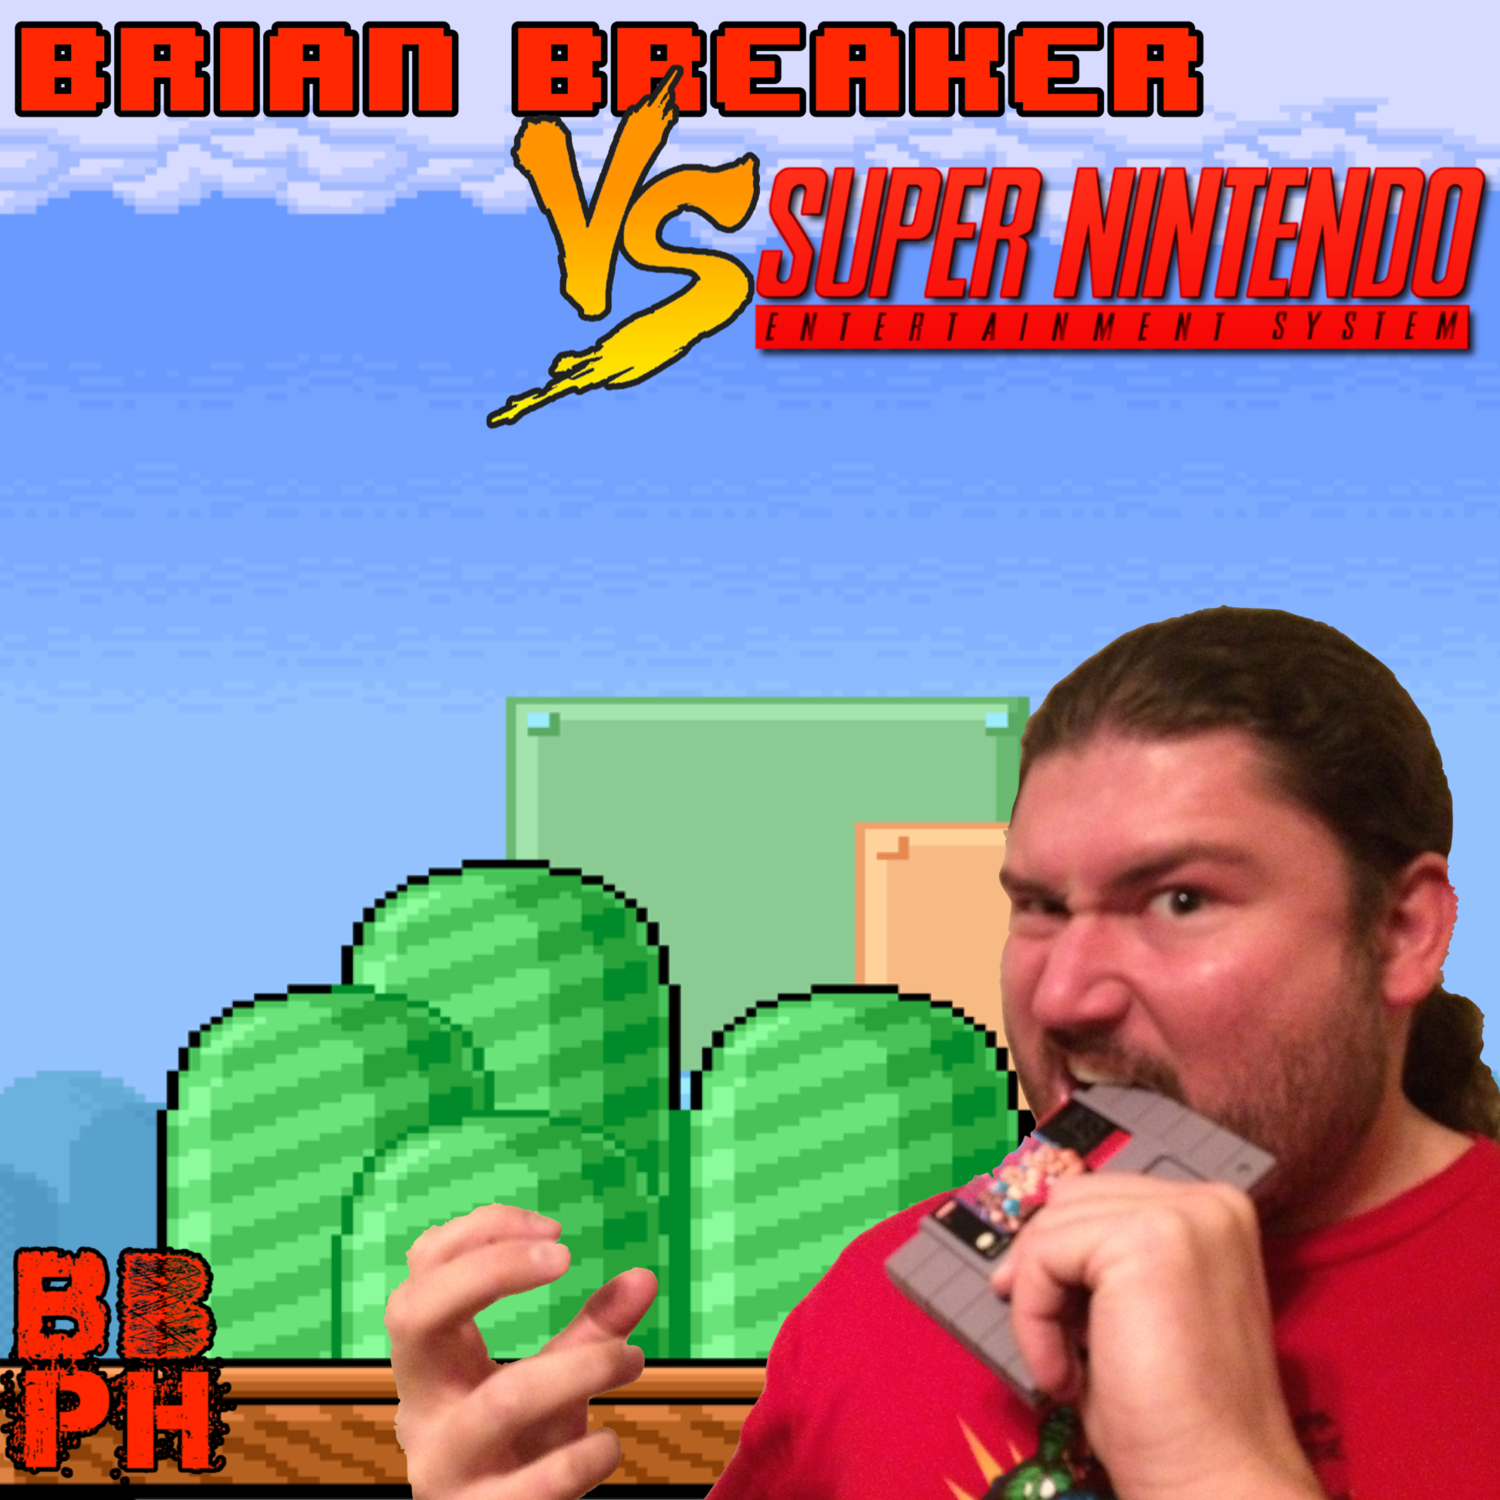 Brian Breaker vs. Super Nintendo - Power Hour